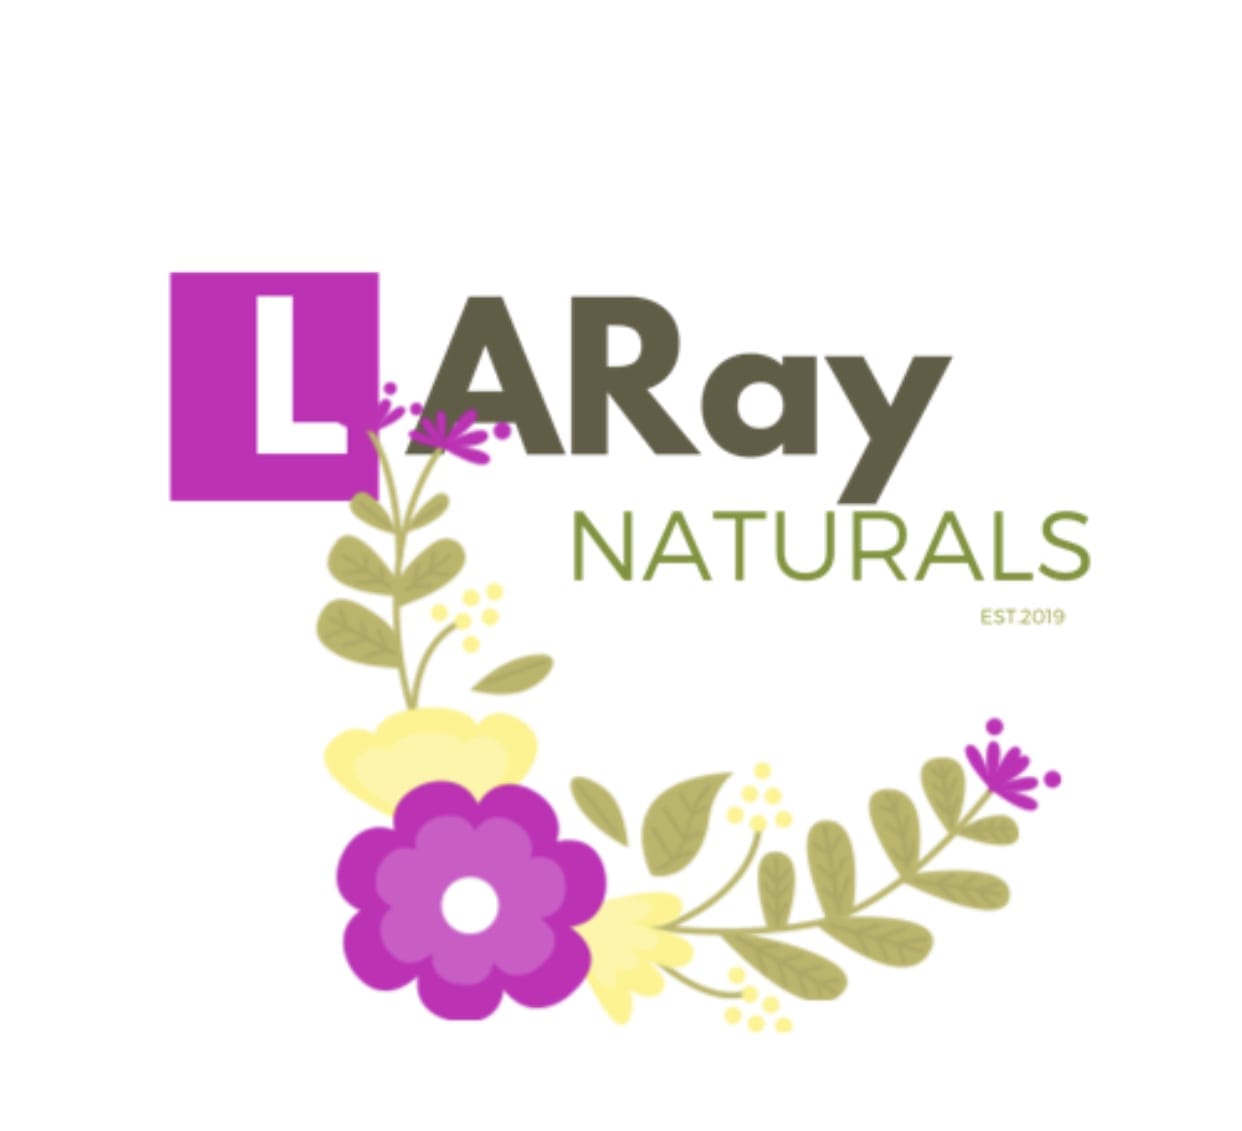 LaRay Naturals